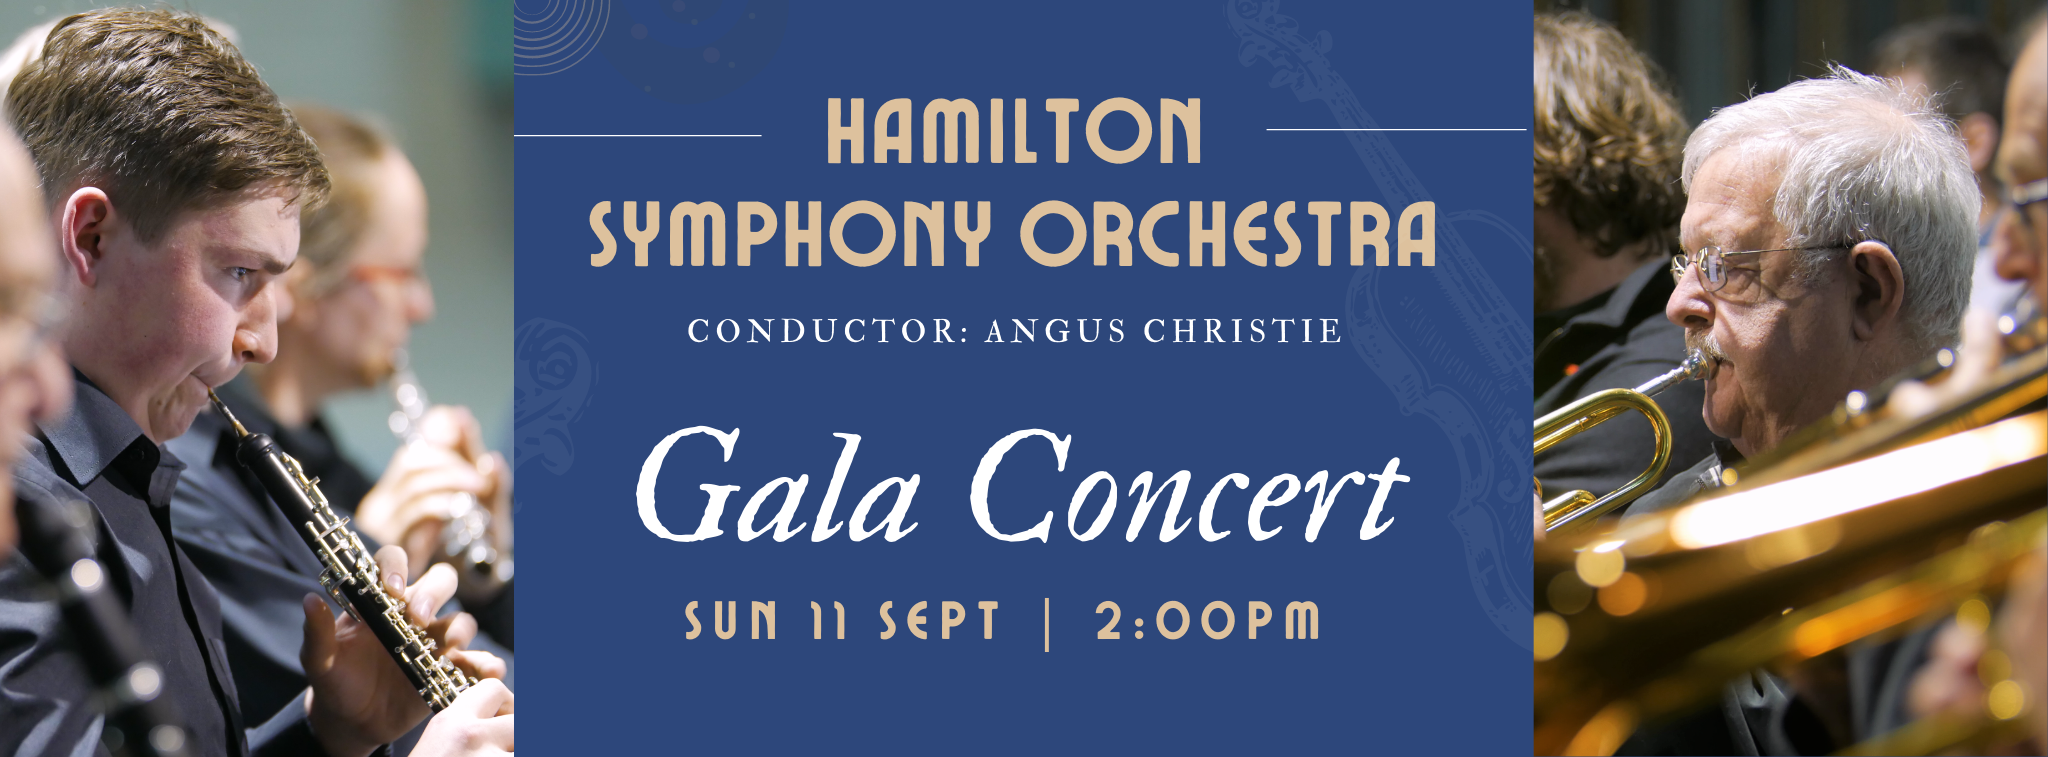 hamilton Symphony orchestra web header